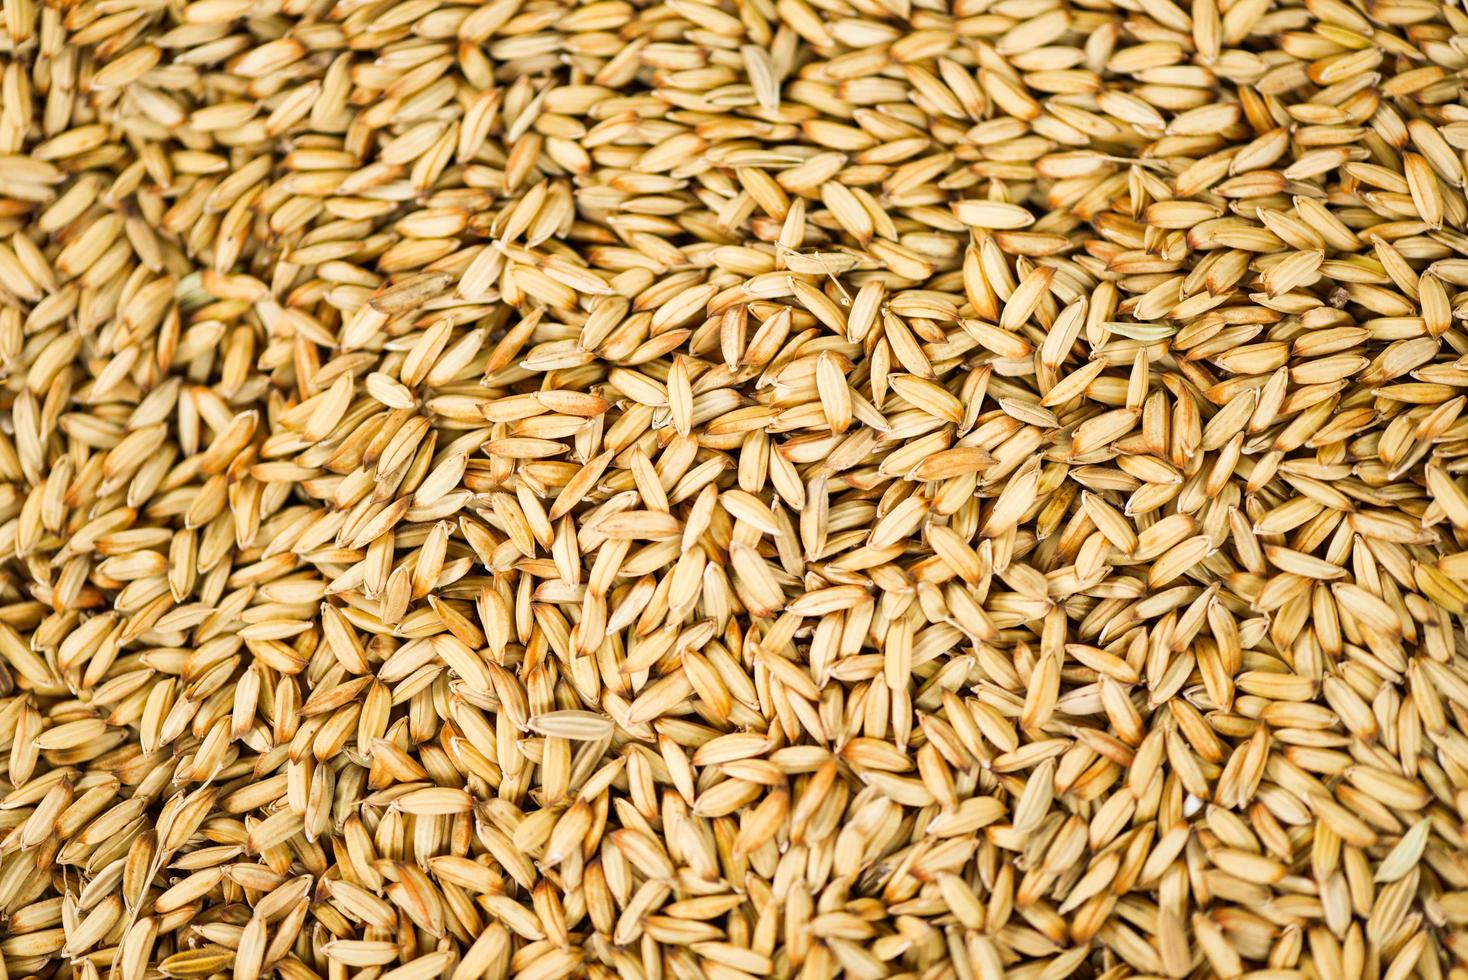 fundo de textura de arroz em casca, sementes secas de arroz orgânico em casca produtos agrícolas da Tailândia asiática para alimentos. foto